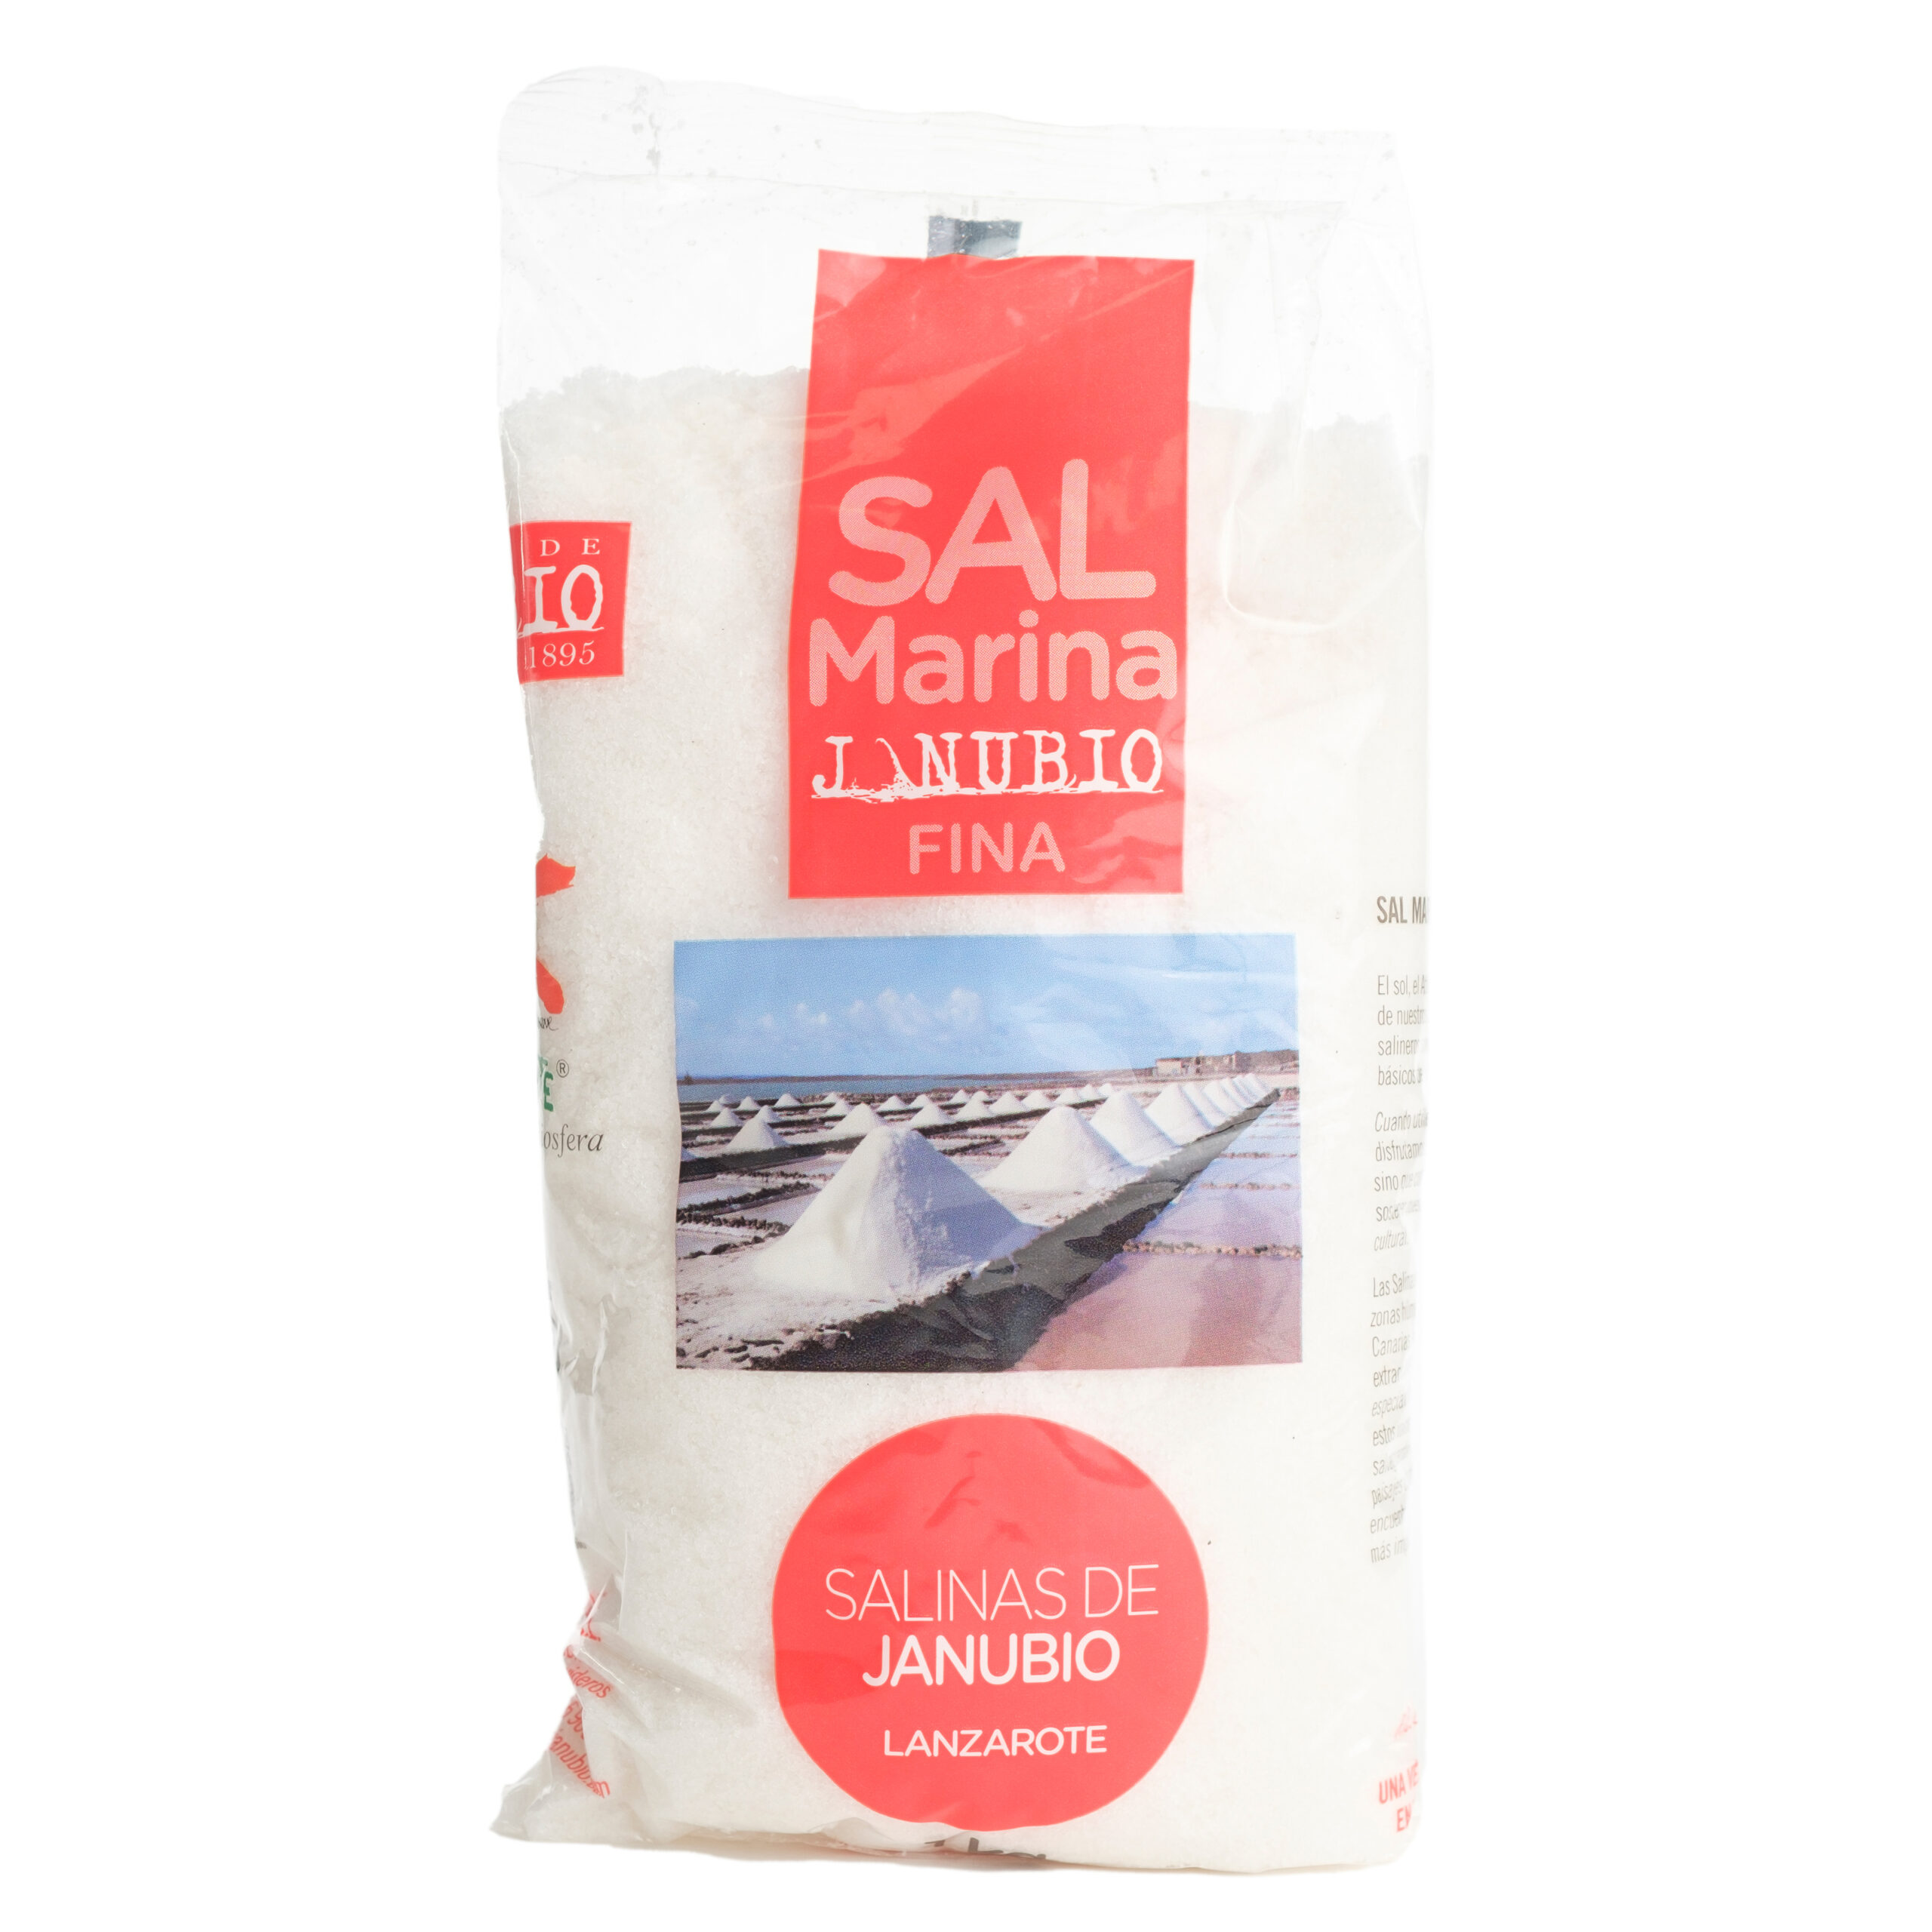 Flor de sal Marina comprar sal marina 1 kg